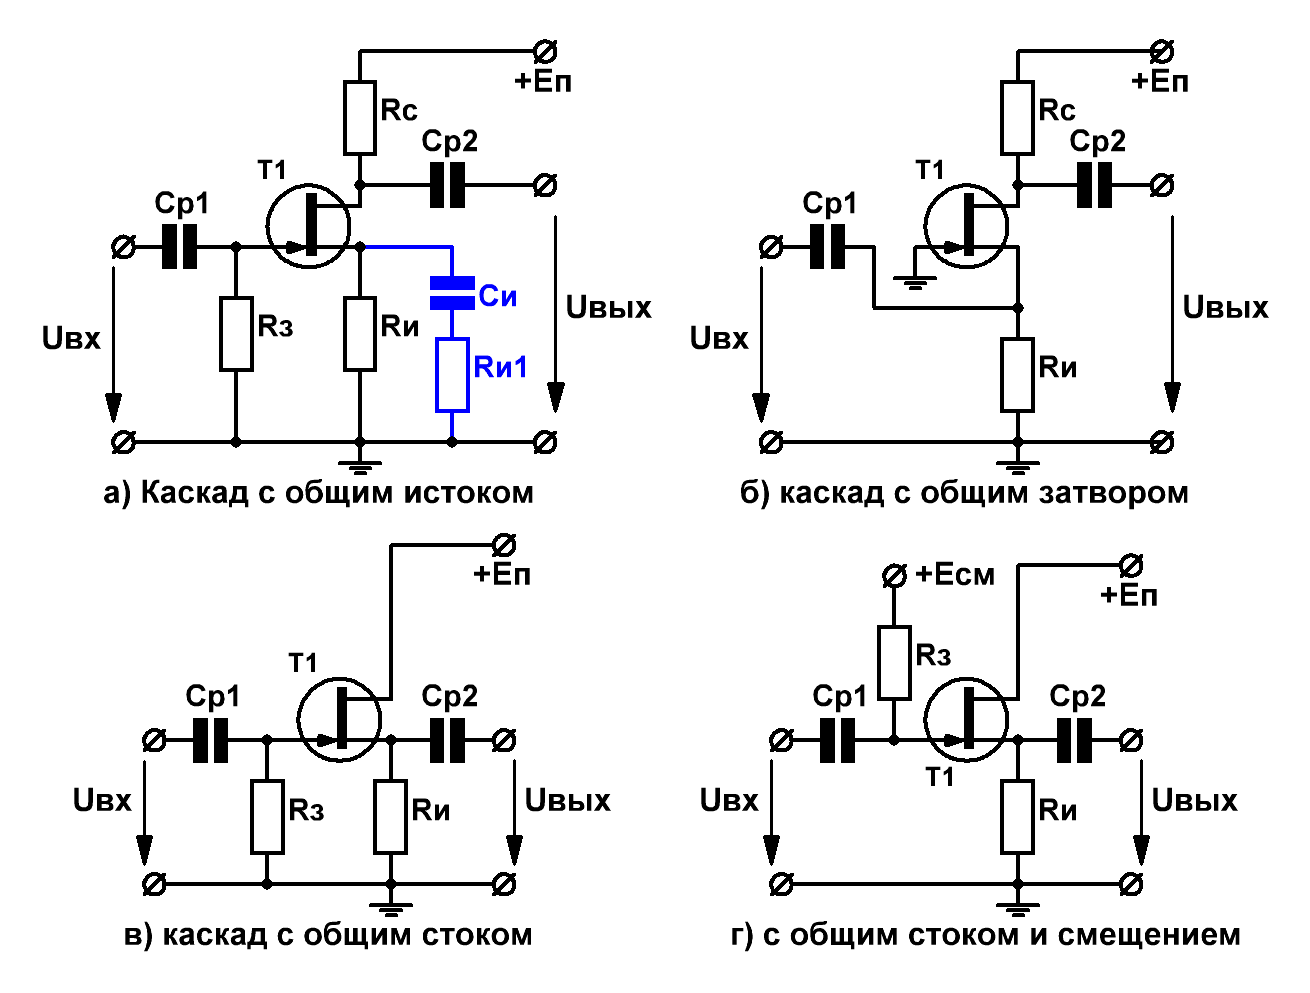 Схемы каскадов на полевых транзисторах ОИ, ОЗ, ОС